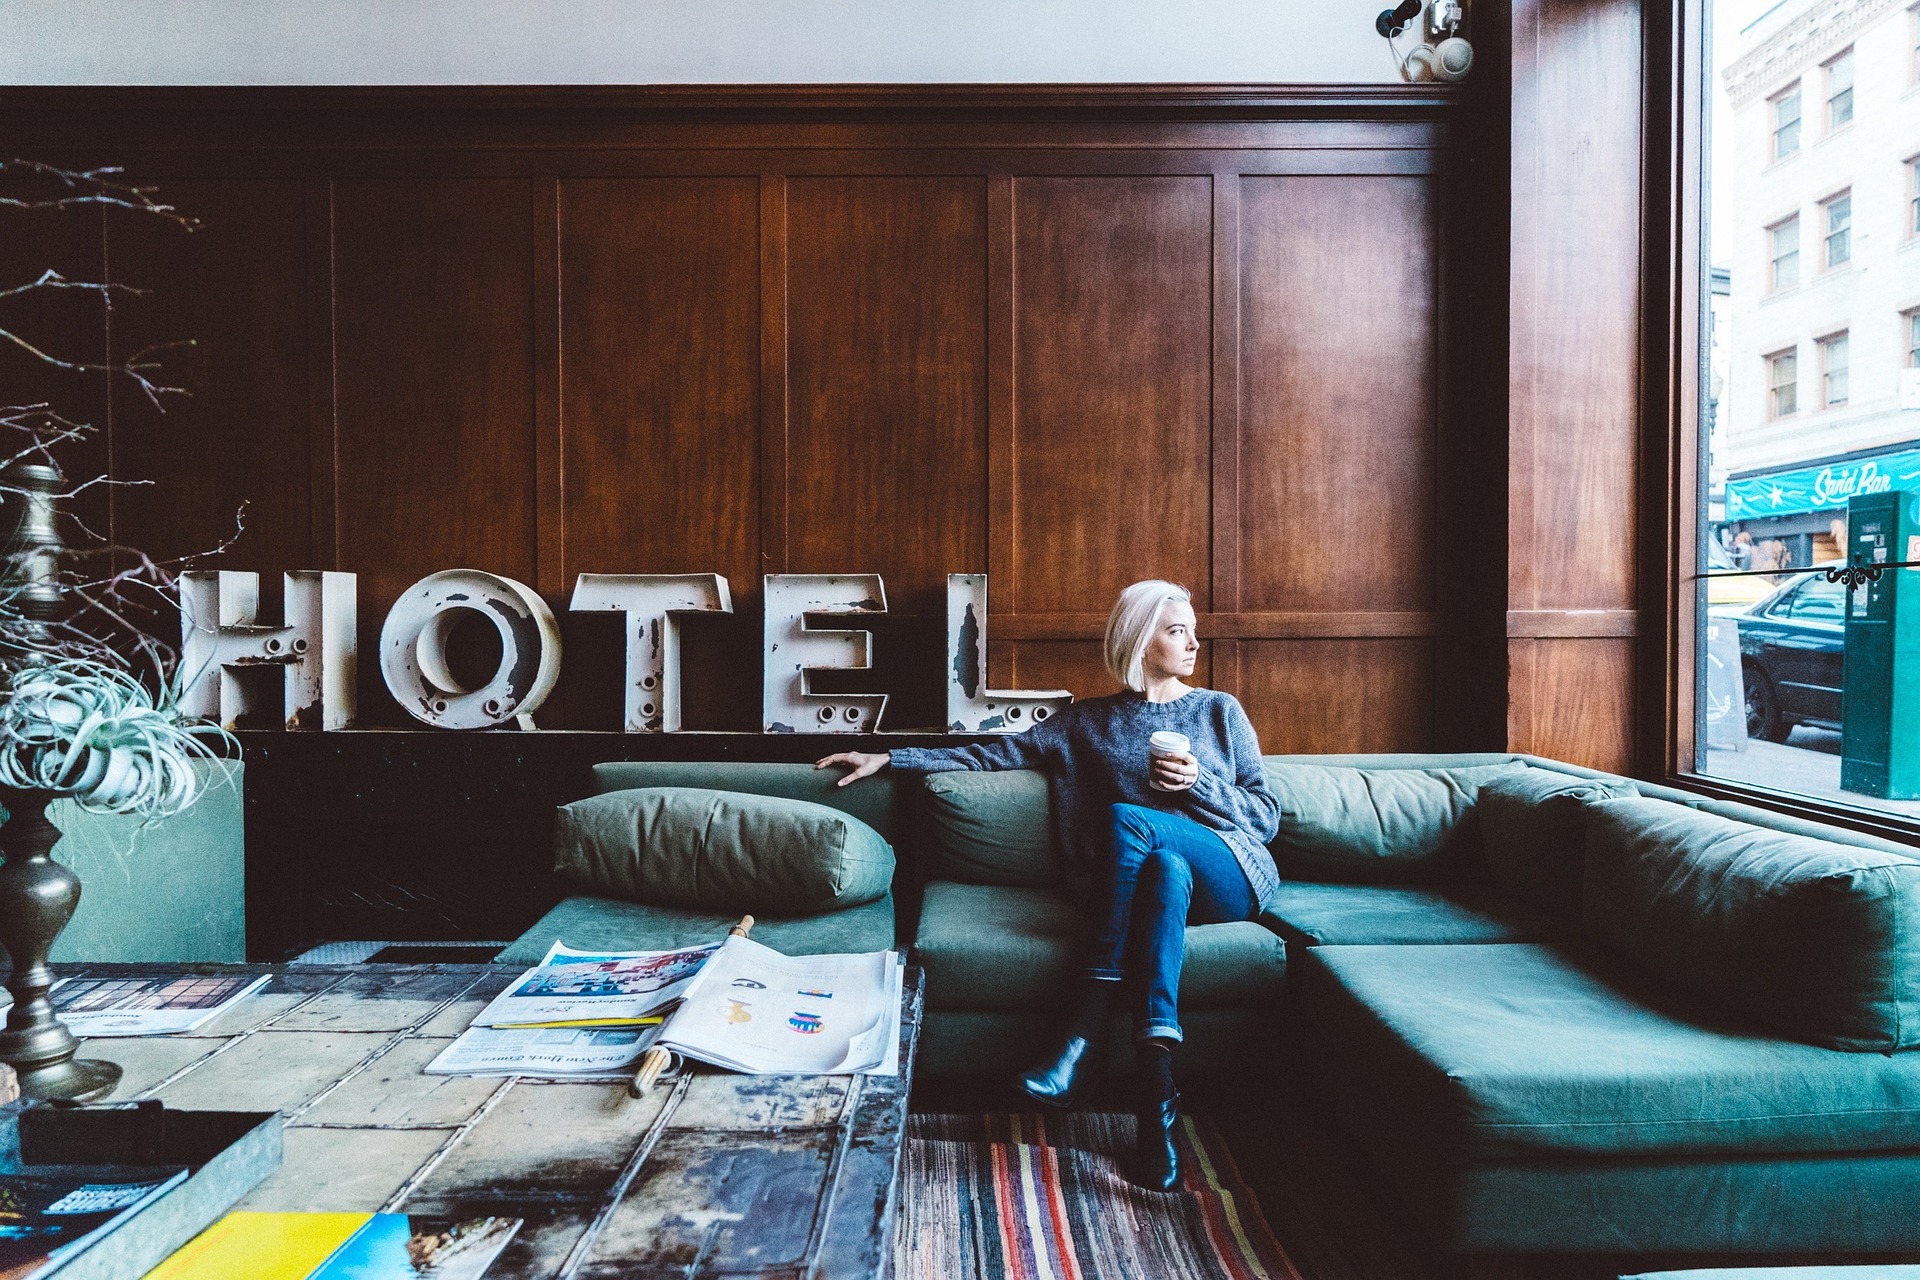 Hotel (źródło: Pixabay)